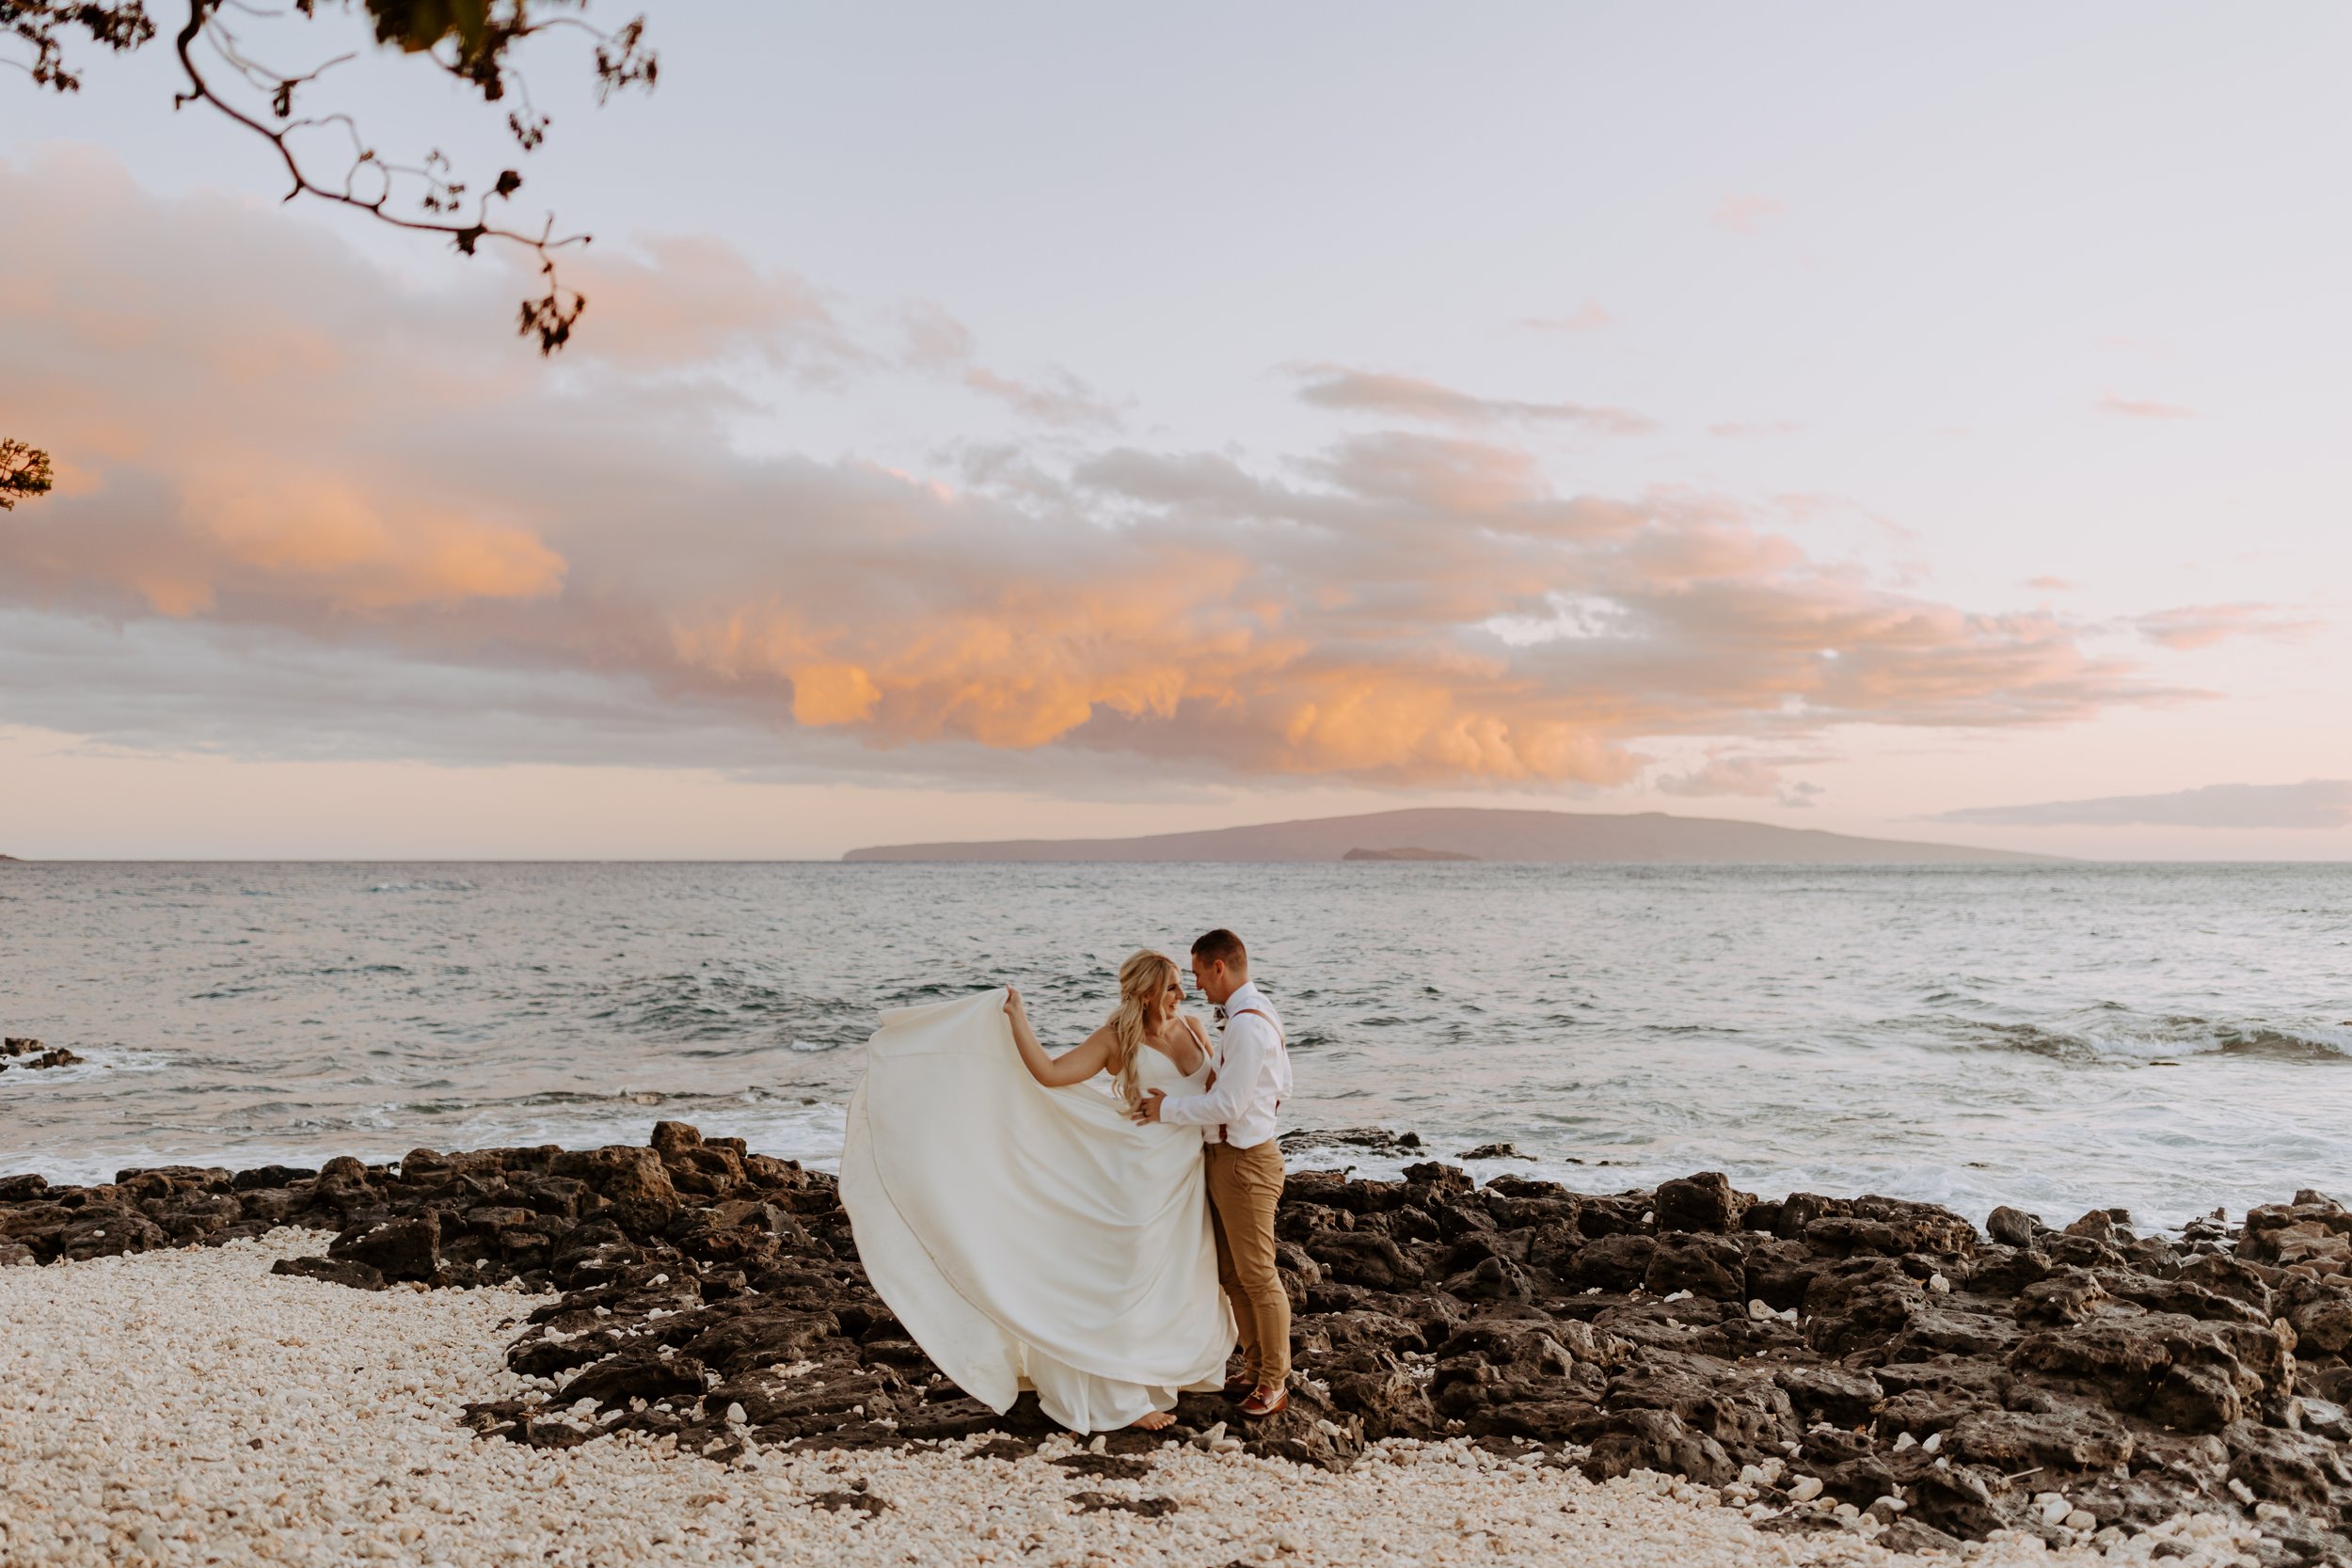 Makaili + Mac Lakin | Grand Wailea Maui Wedding - Hawaii Photographer506.jpg